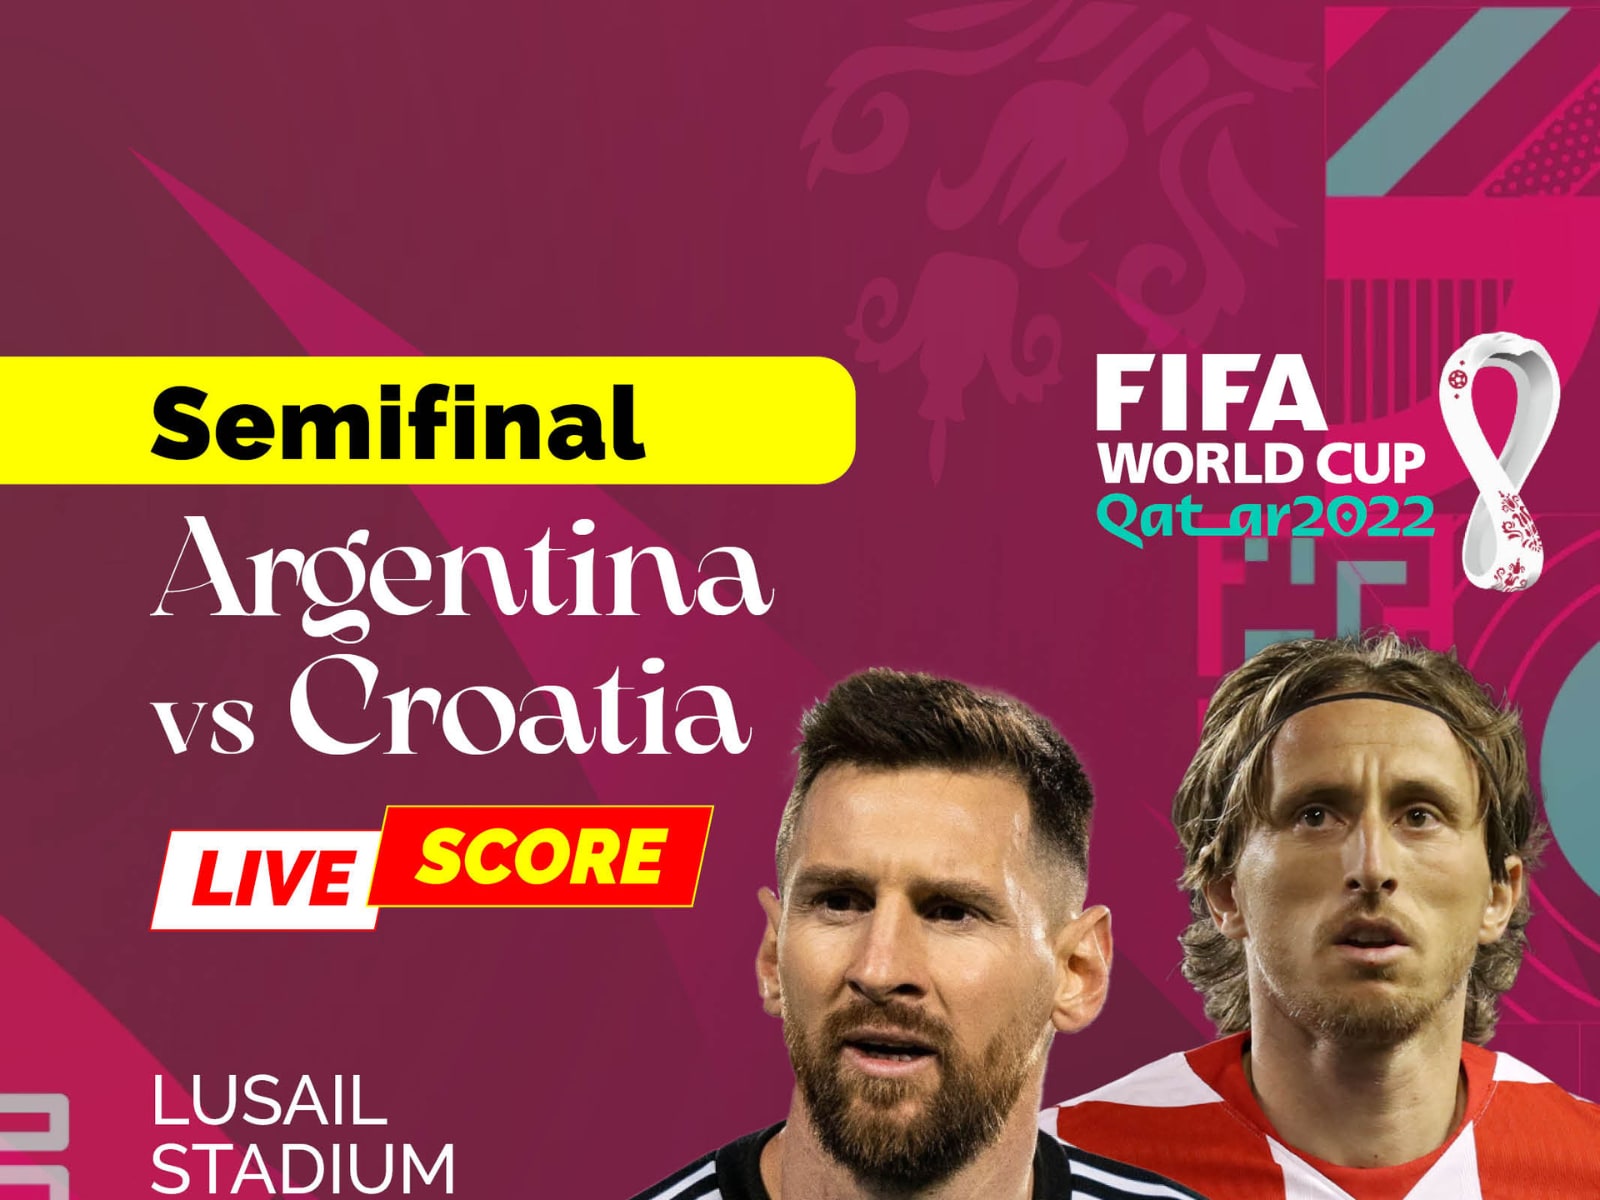 Argentina vs Croatia FIFA World Cup 2022 Highlights Lionel Messi, Julian Alvarez Star; ARG 3-0 CRO